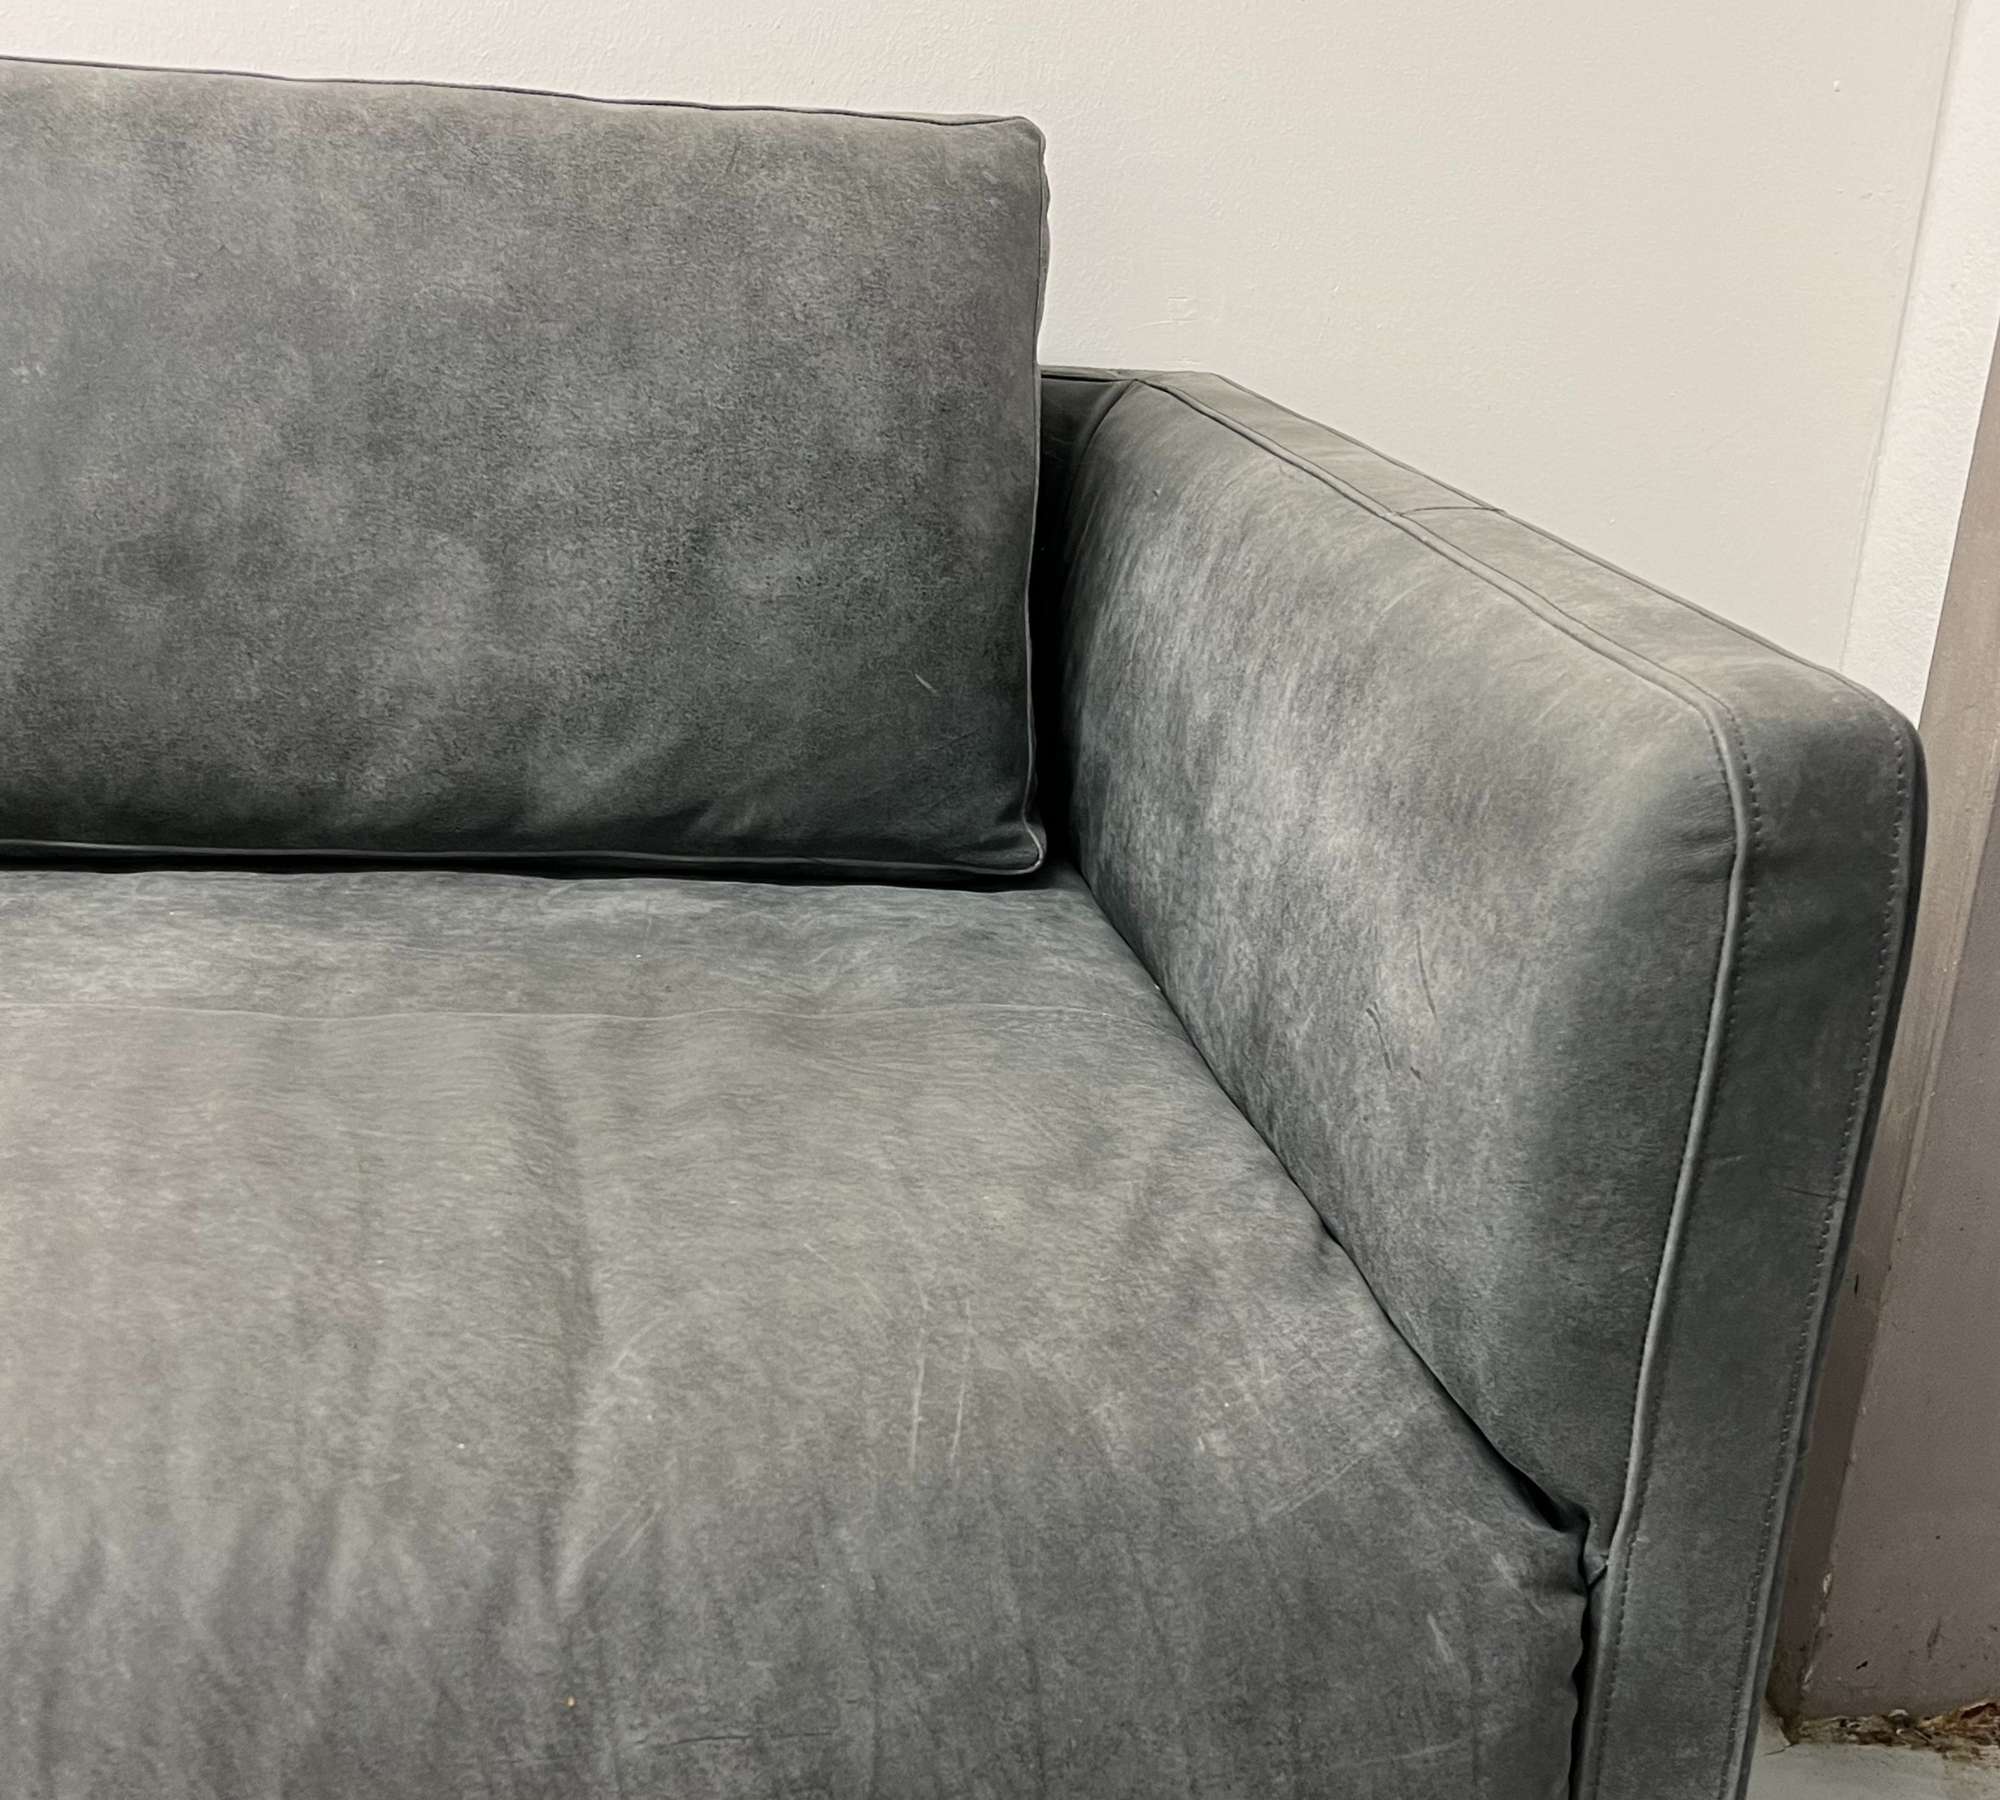 Slender Sofa 2-Sitzer Leder Grau